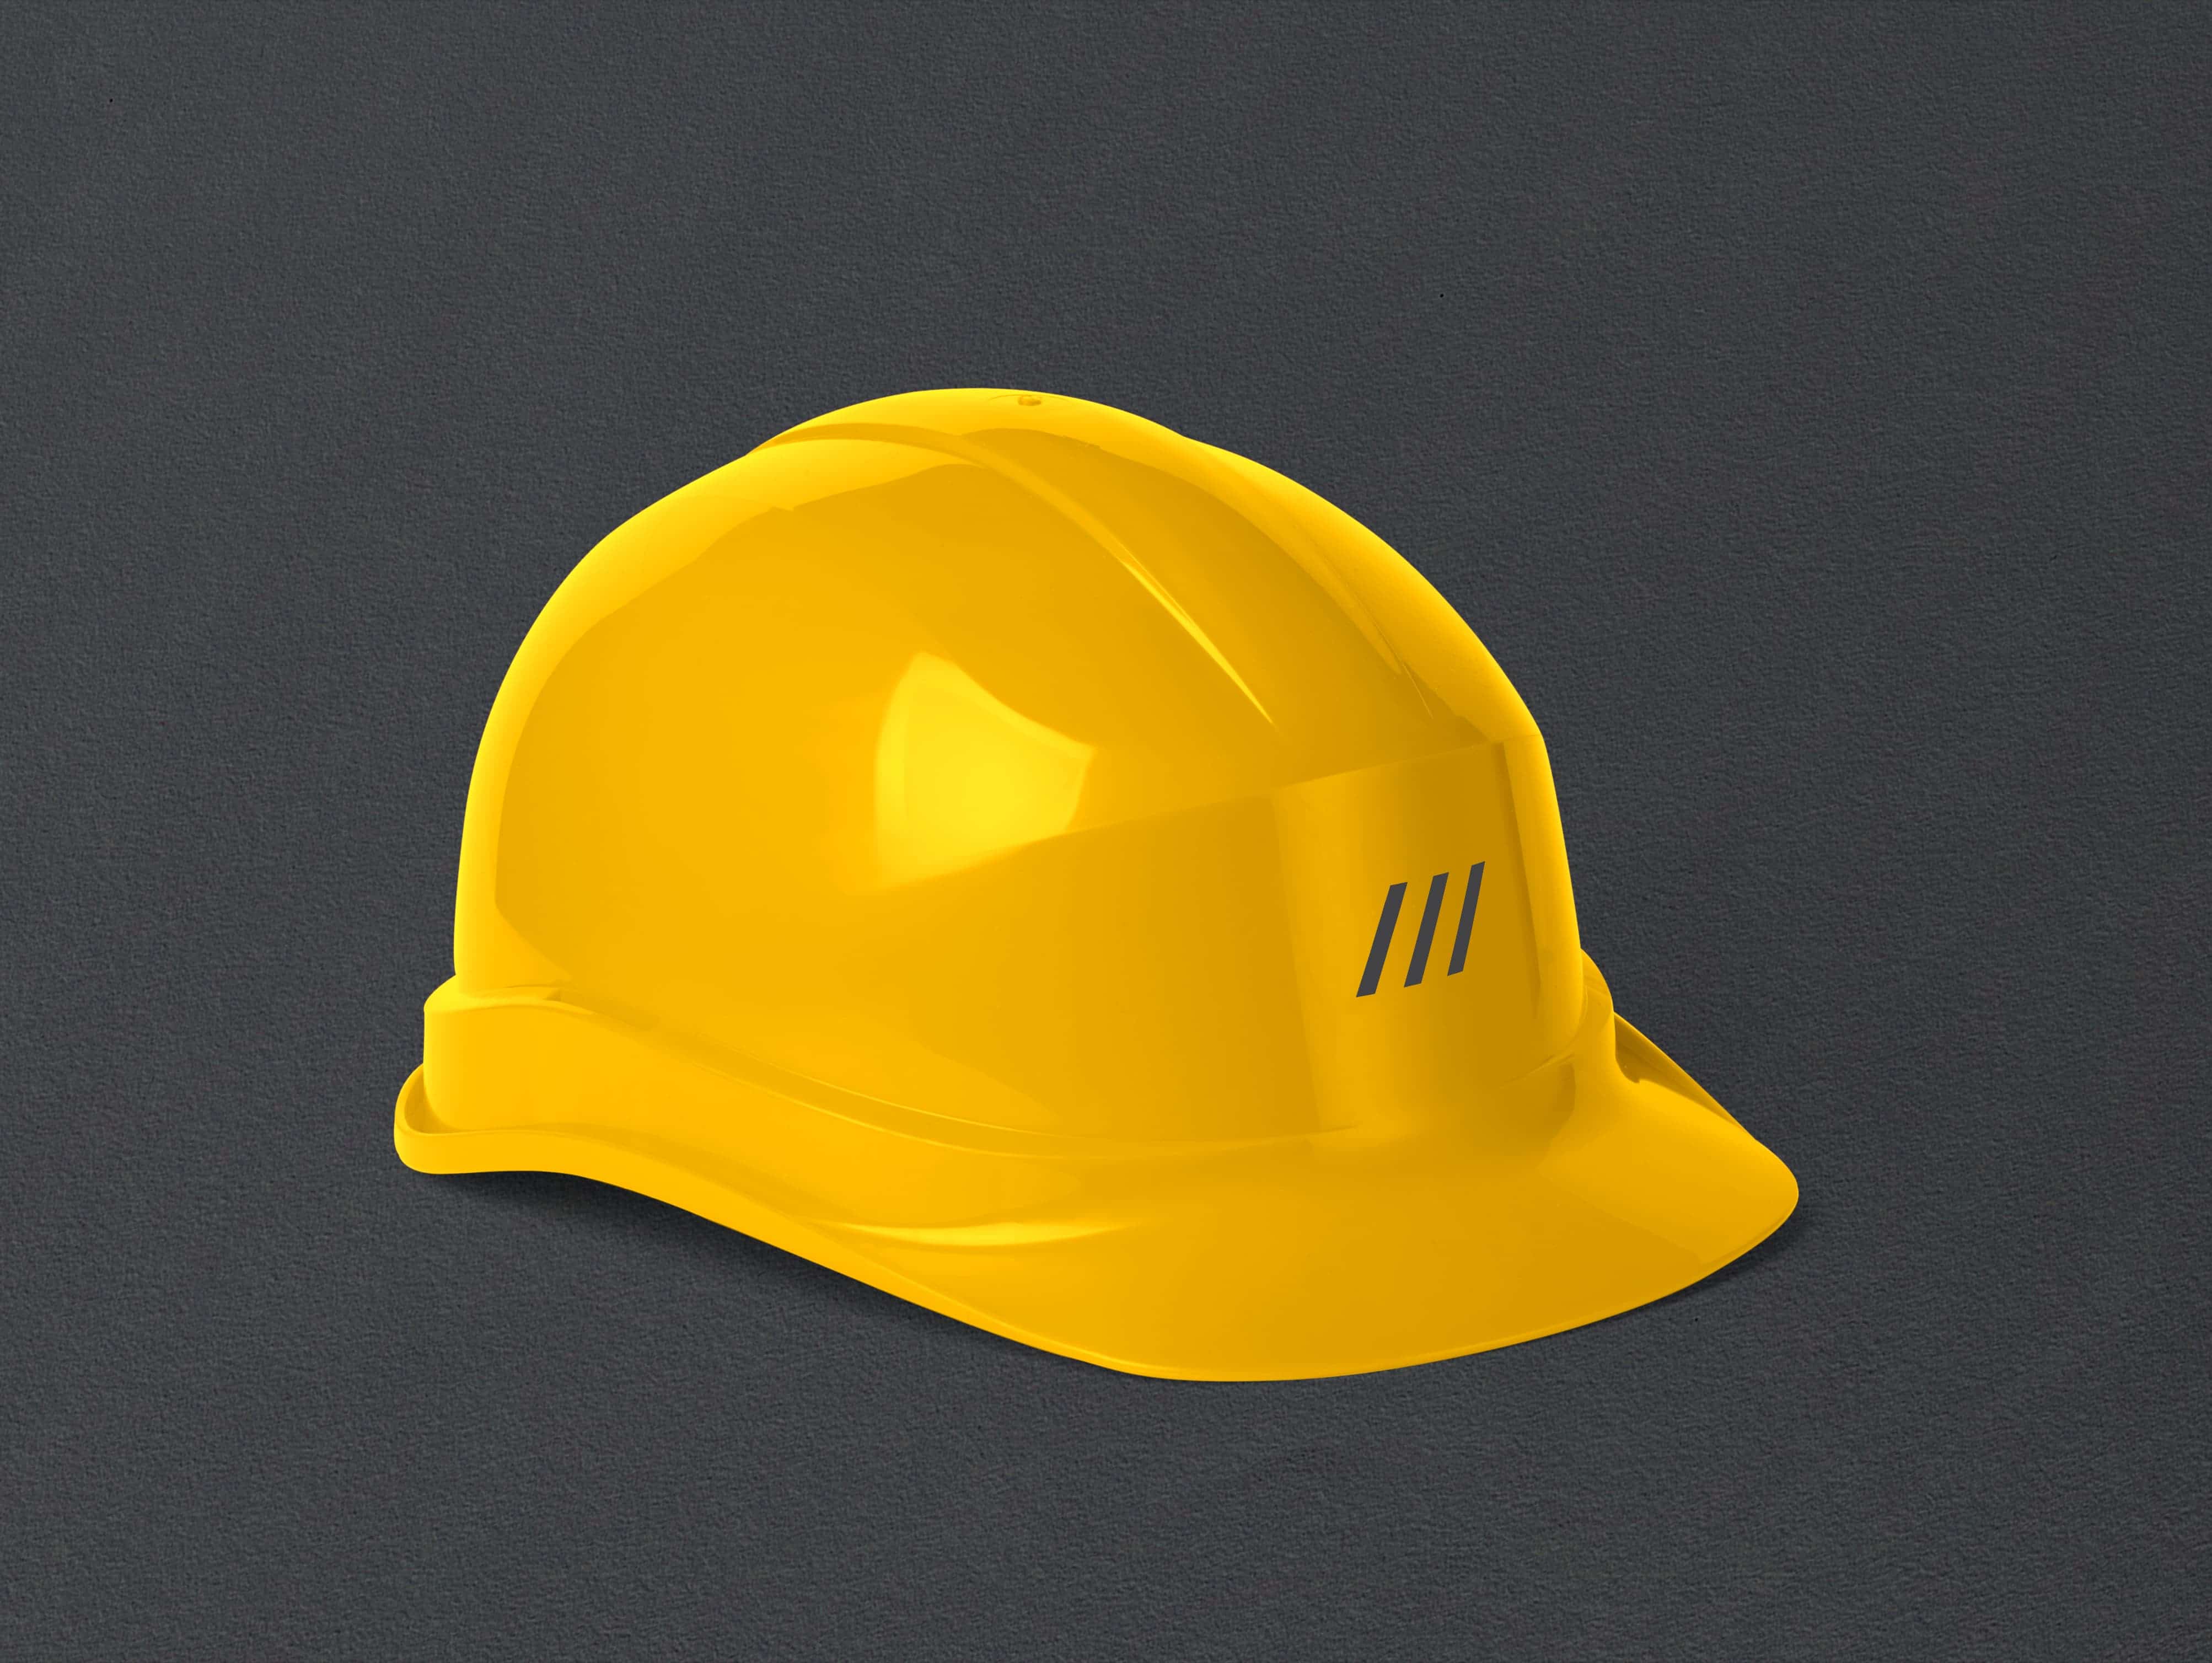 Брендированная жёлтая строительная каска с логотипом.